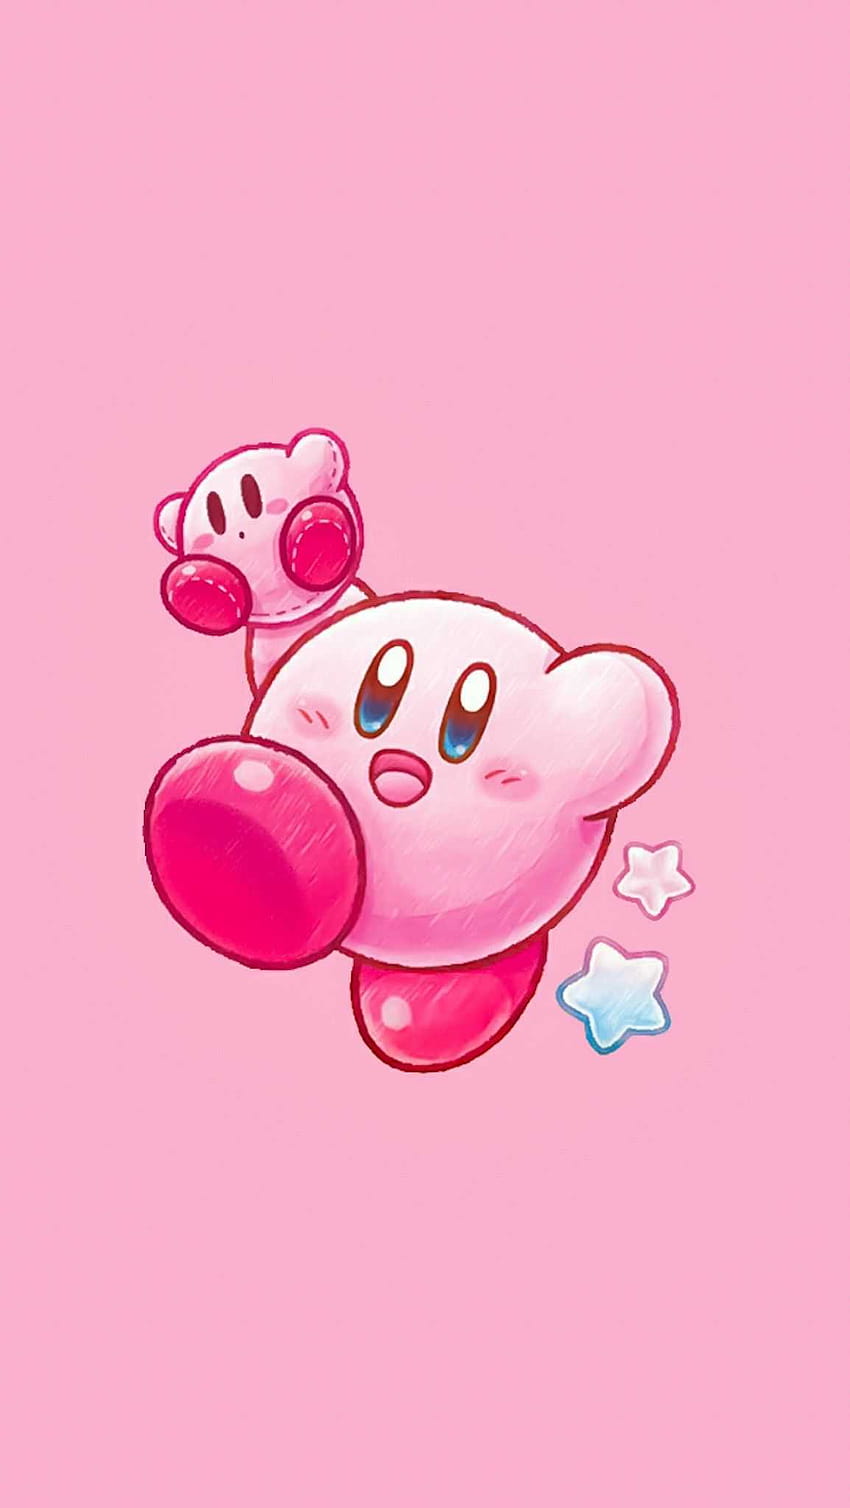 Với những chiếc điện thoại thông minh của bạn, hãy dùng những hình nền Kirby dễ thương để tạo nên phong cách riêng và trẻ trung. Bộ sưu tập hình nền Kirby cho điện thoại của chúng tôi sẽ khiến bạn phát cuồng vì sự dễ thương của nhân vật Kirby.